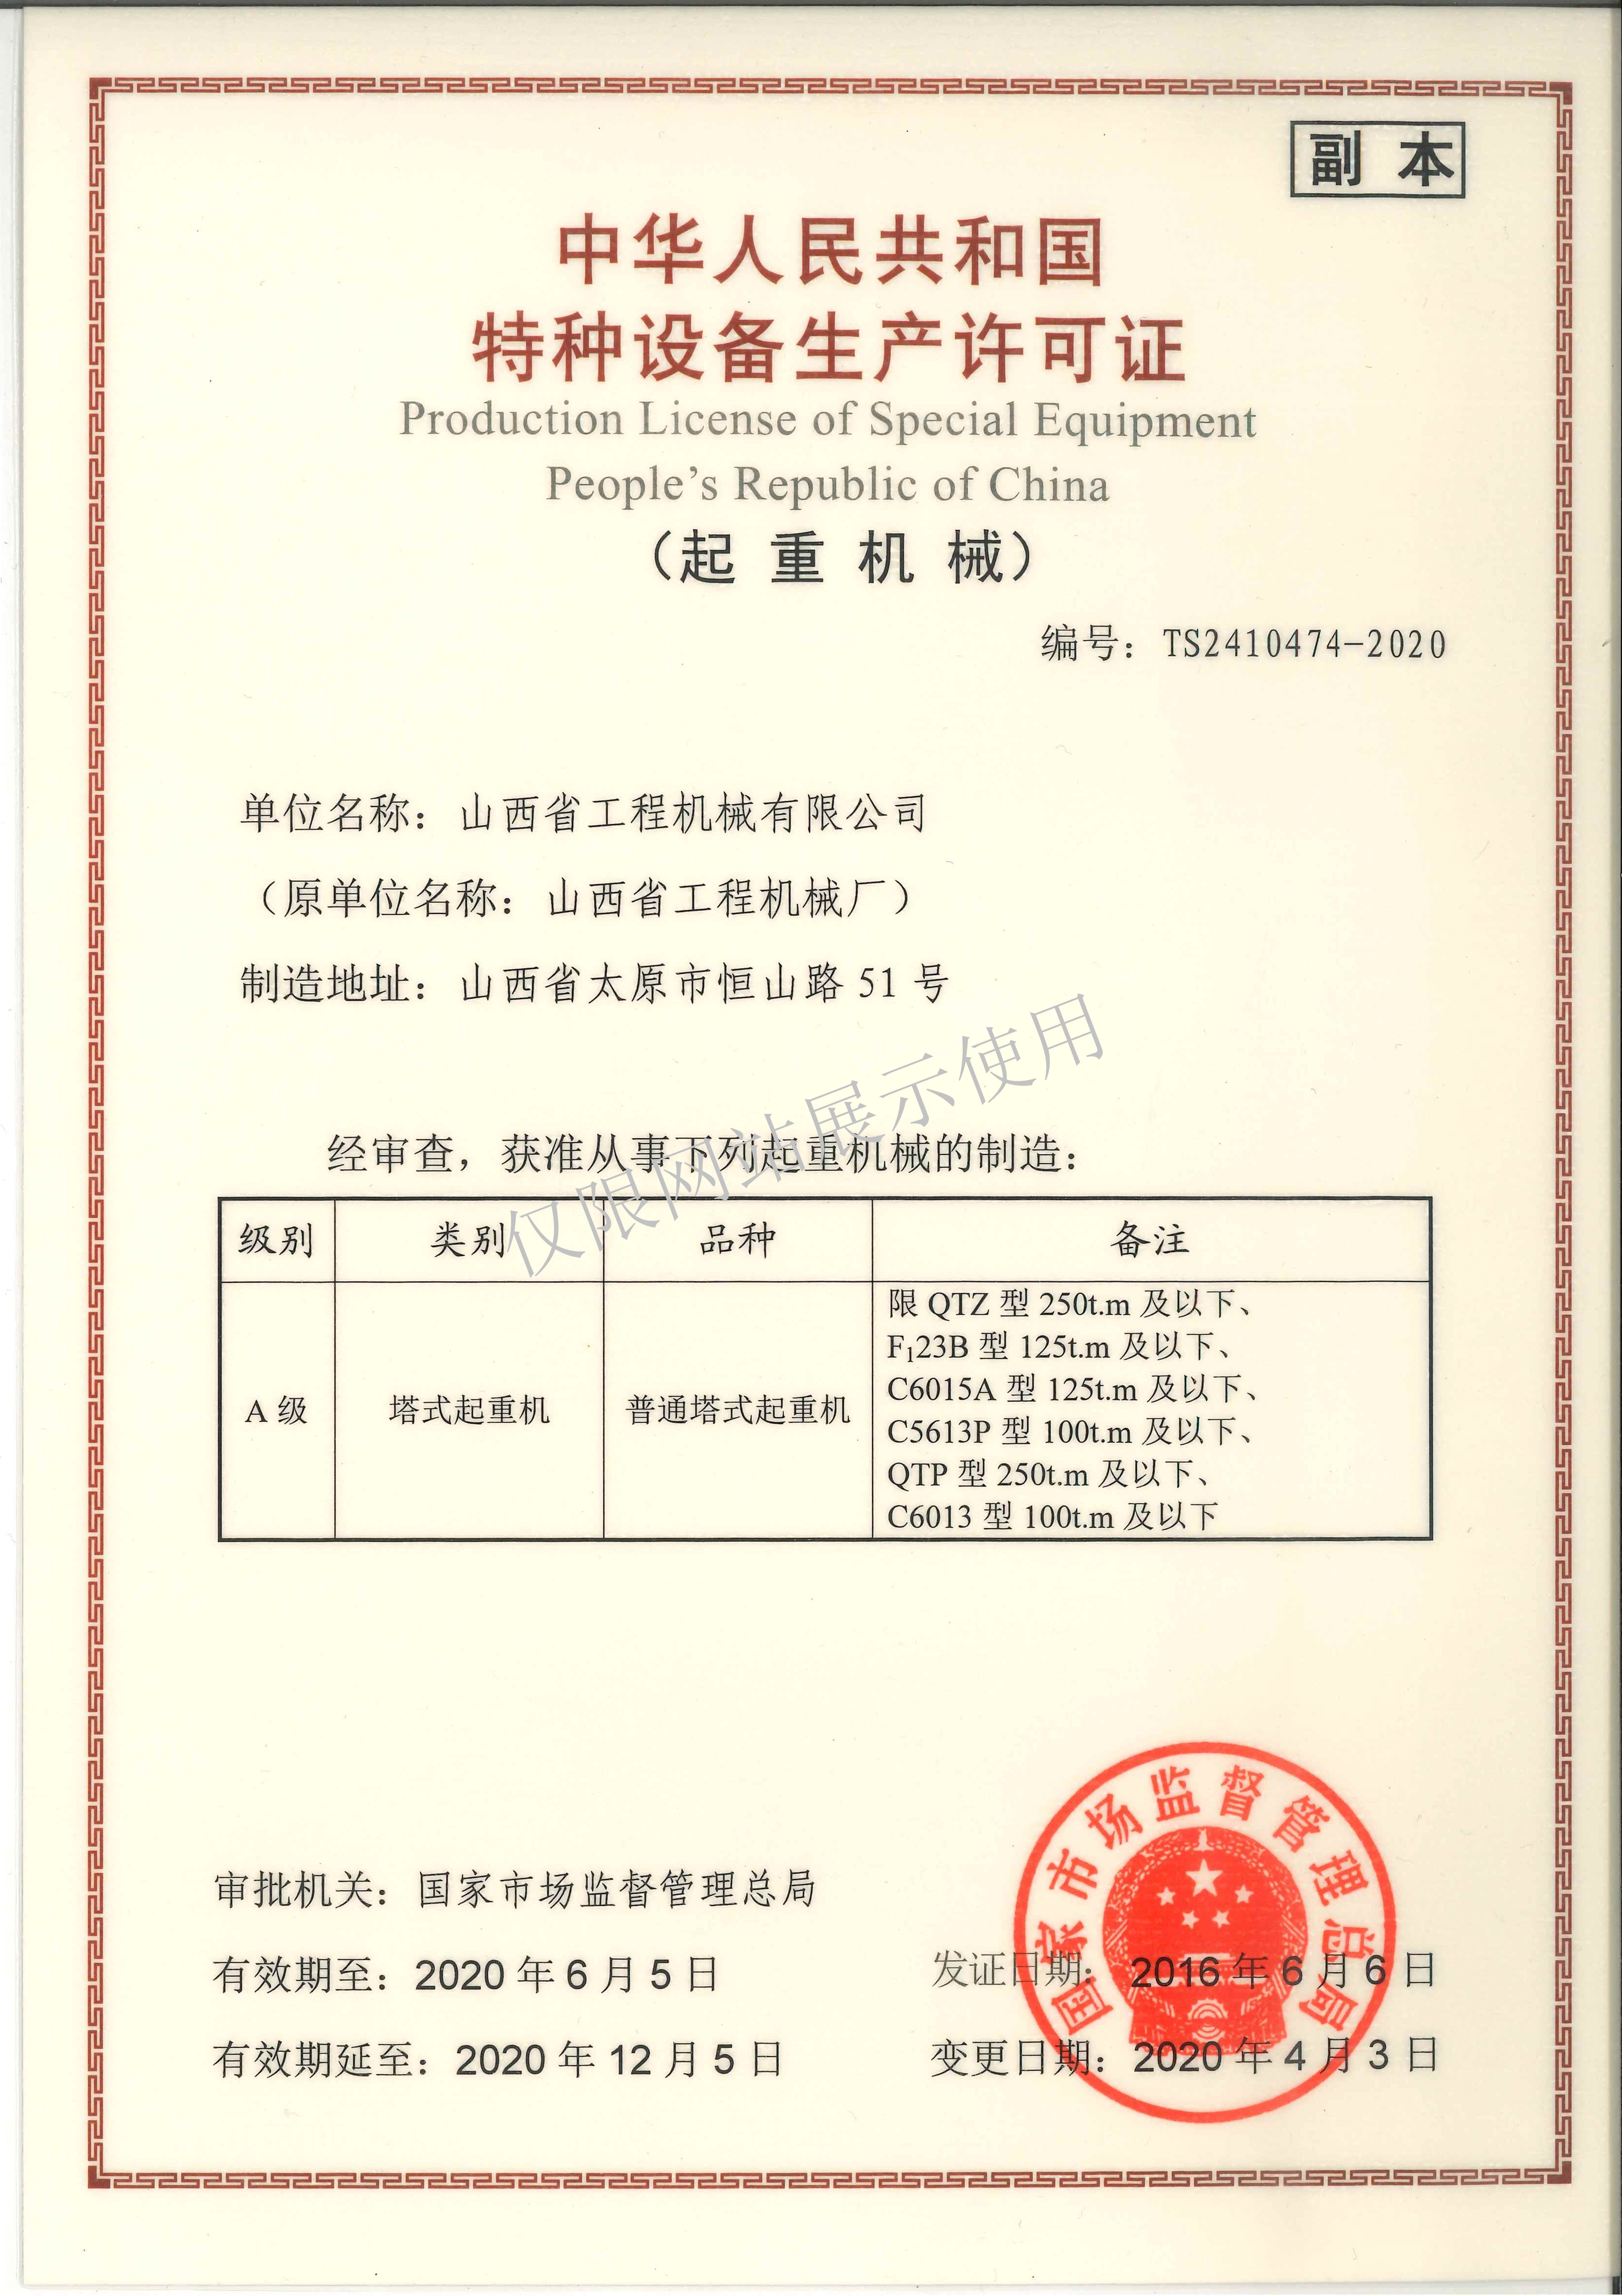 特种设备制造许可证副本力量体育平台（中国）责任有限公司塔式起重机